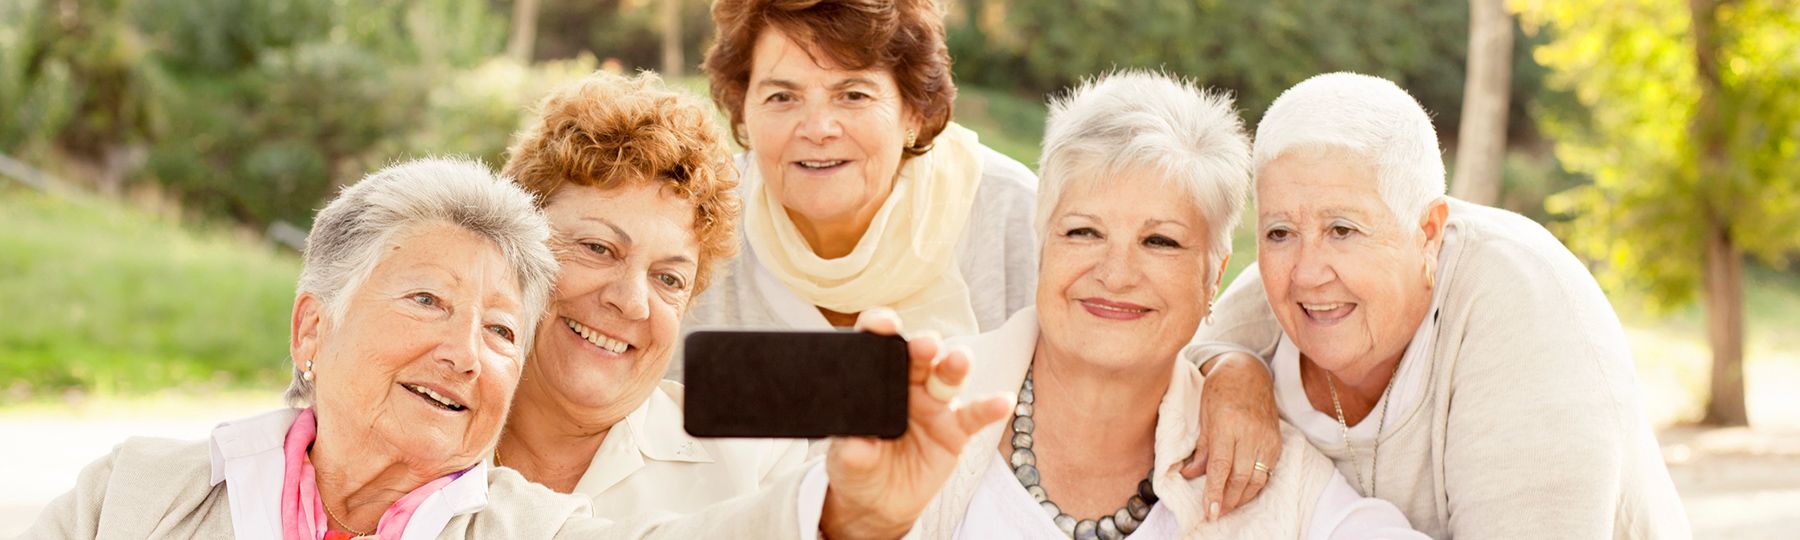 Five older friends taking a selfie